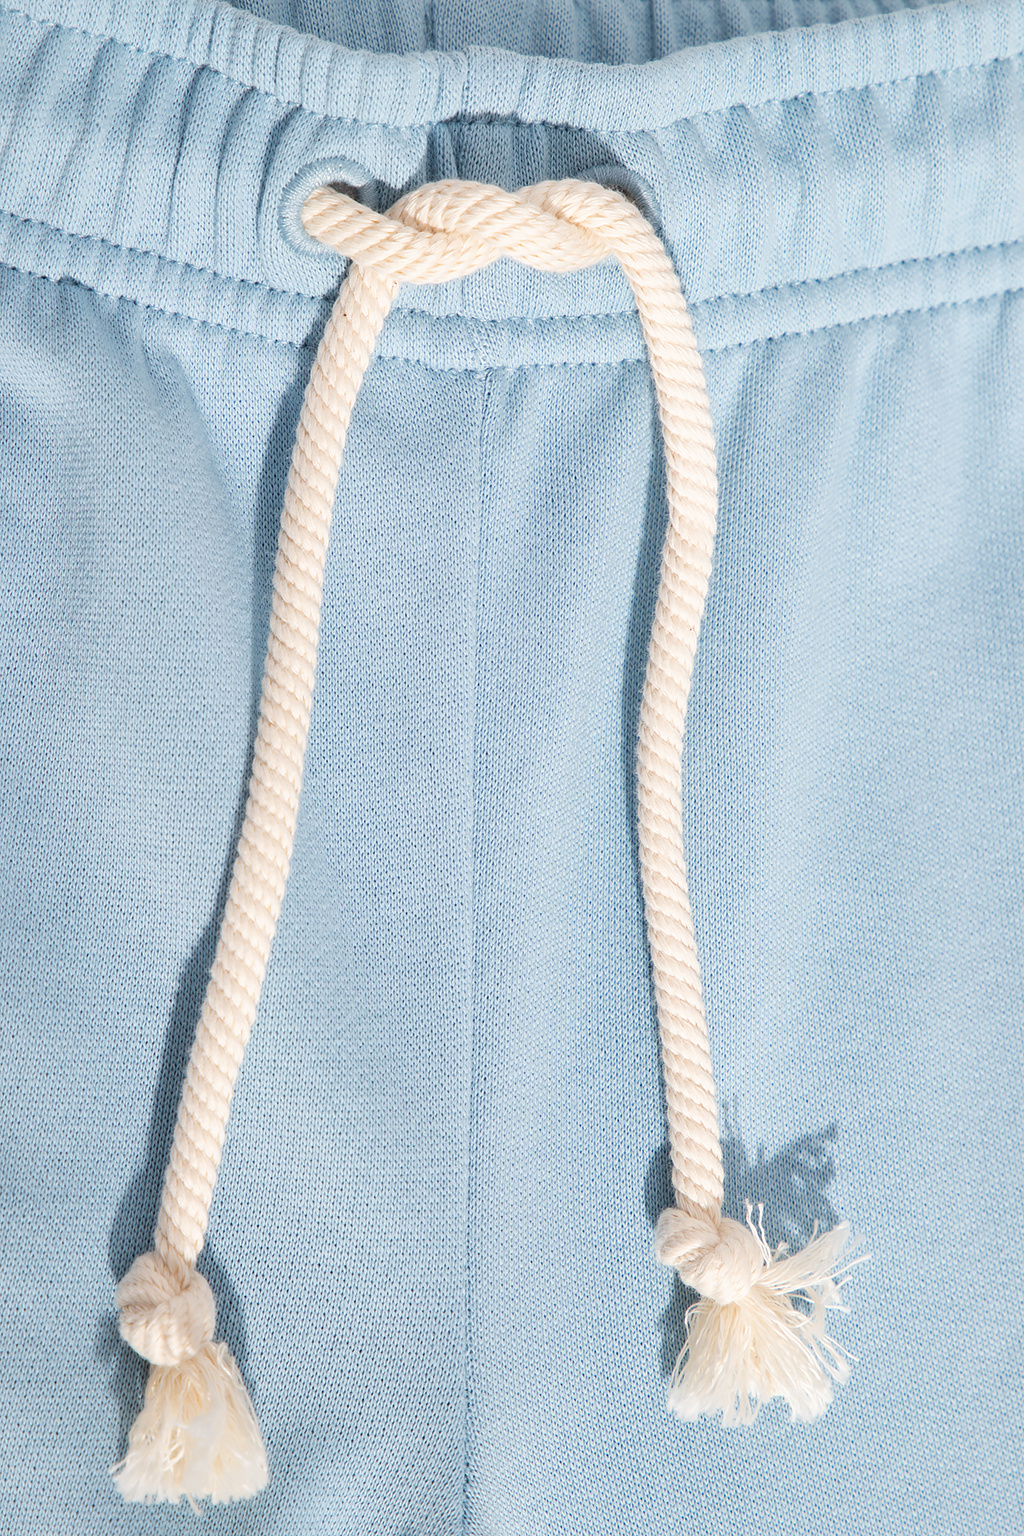 Acne Studios Kids Emporio Armani Dress Emporio Armani Dress In Viscose Knit